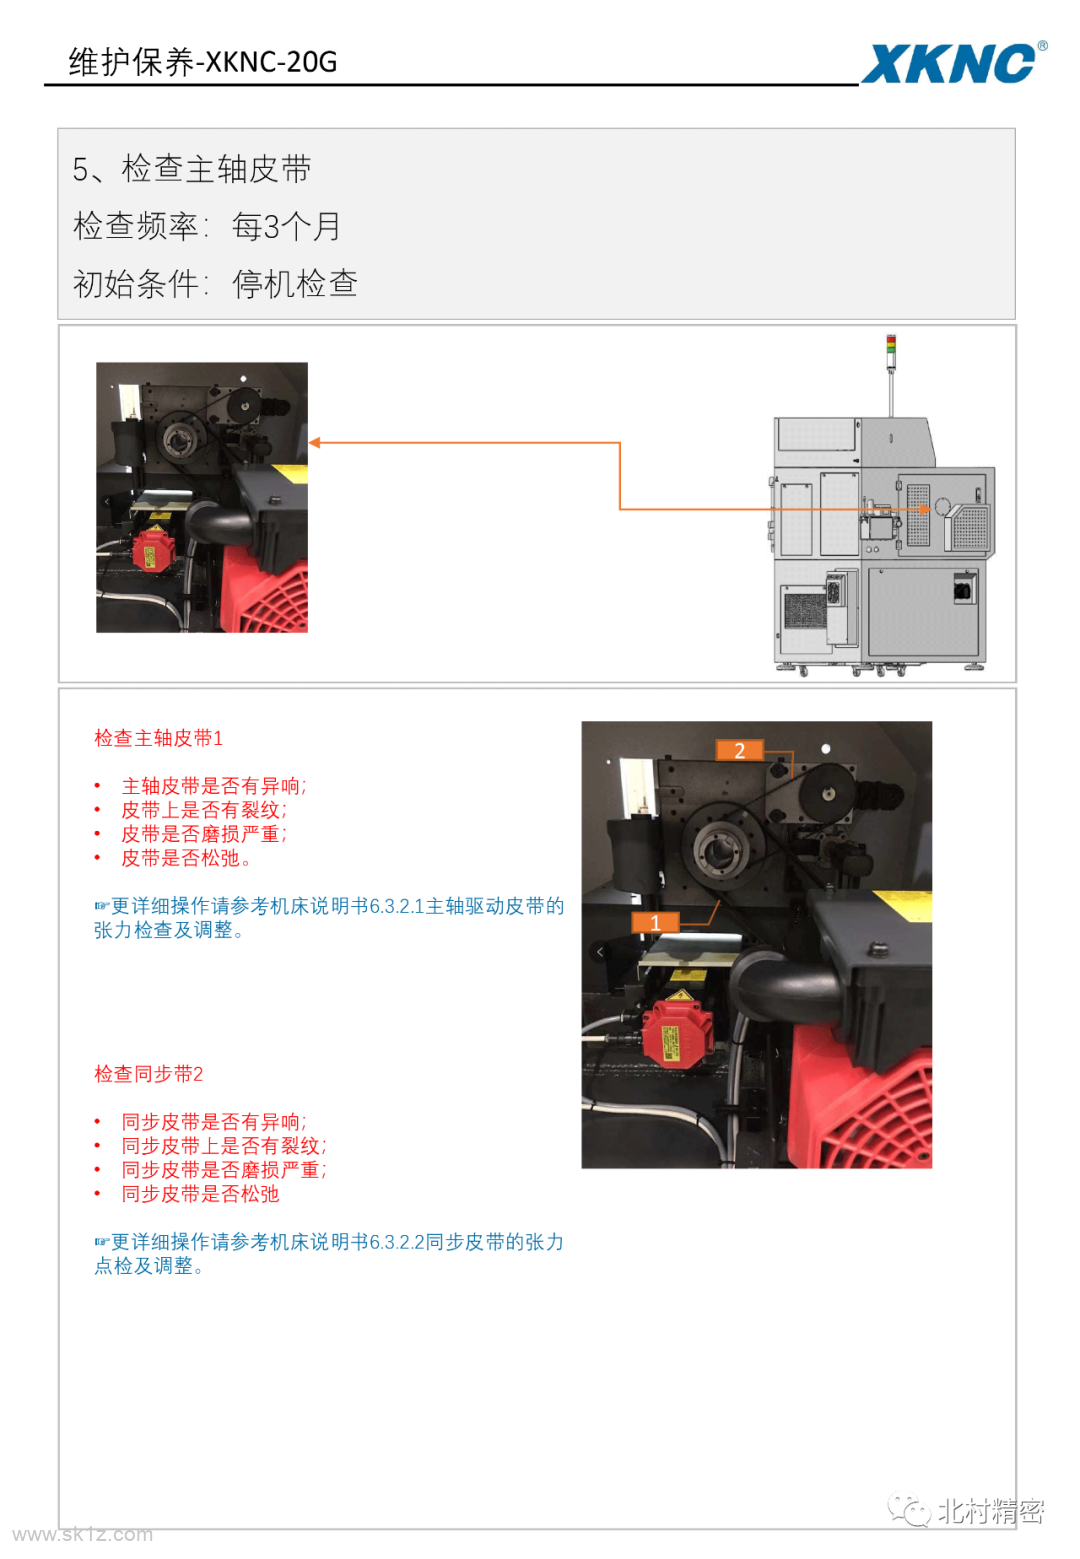 【维修干货】| XKNC-20G机床日常维护保养指导